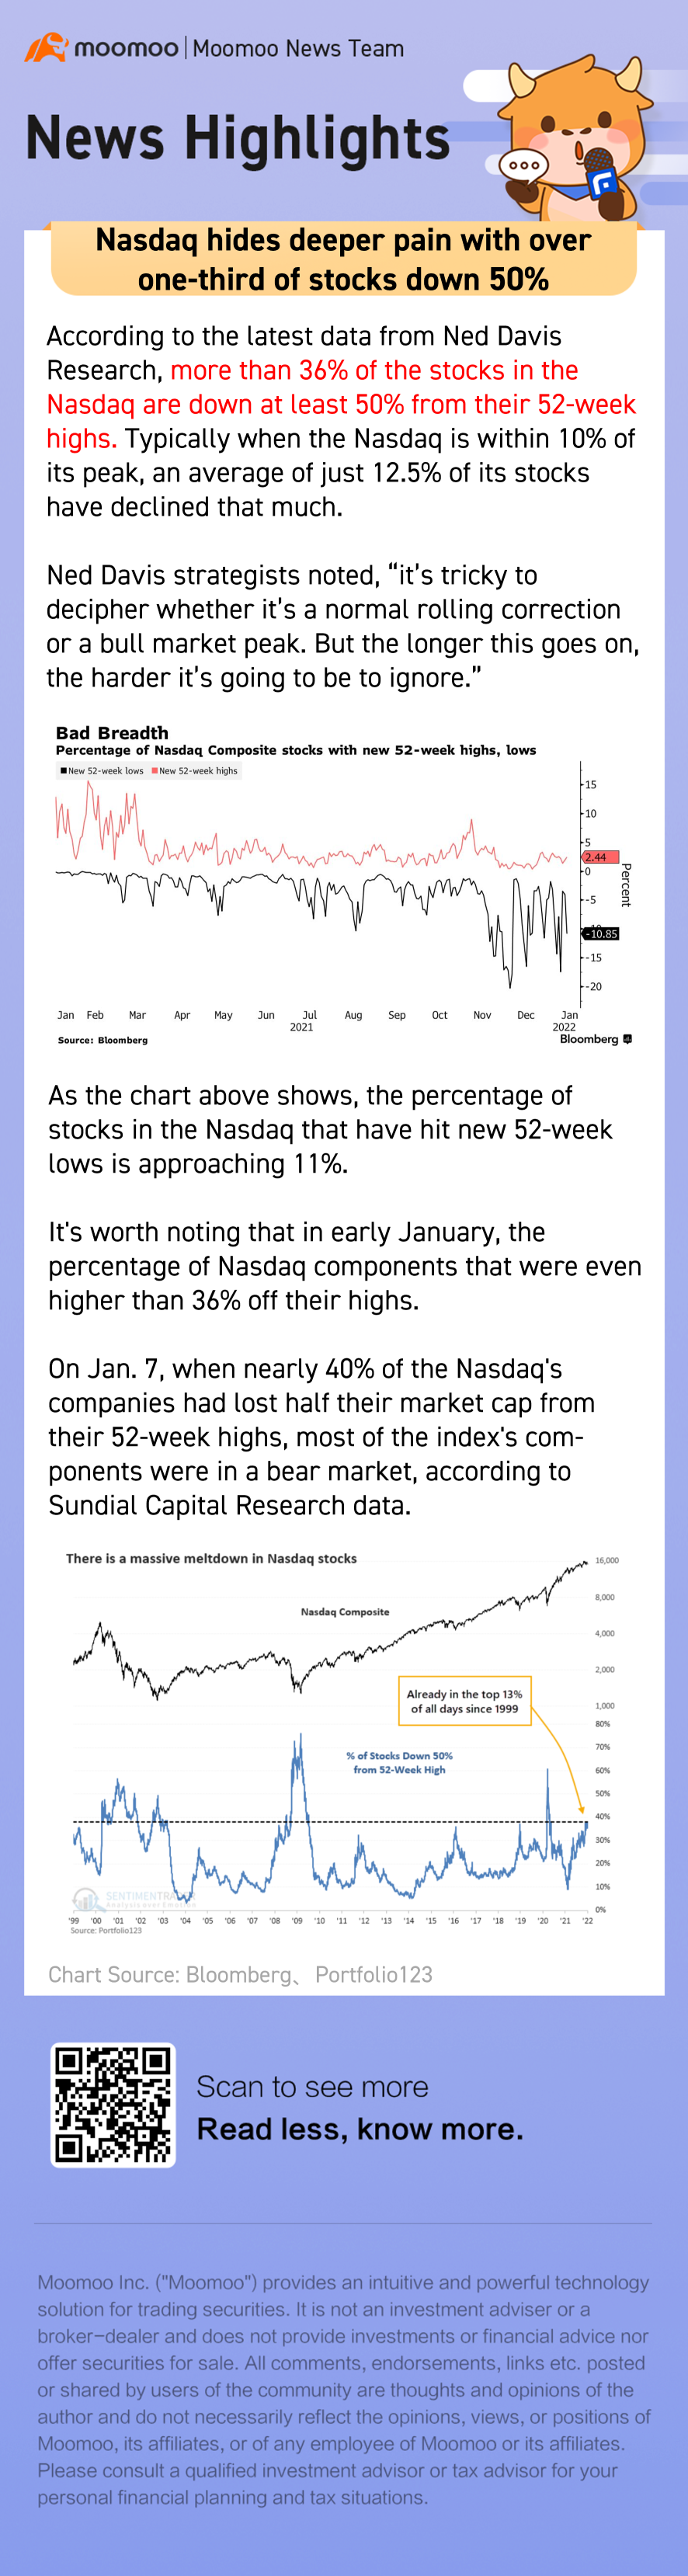 ナスダックは、株式の3分の1以上が50％下落している深刻な状態を隠している